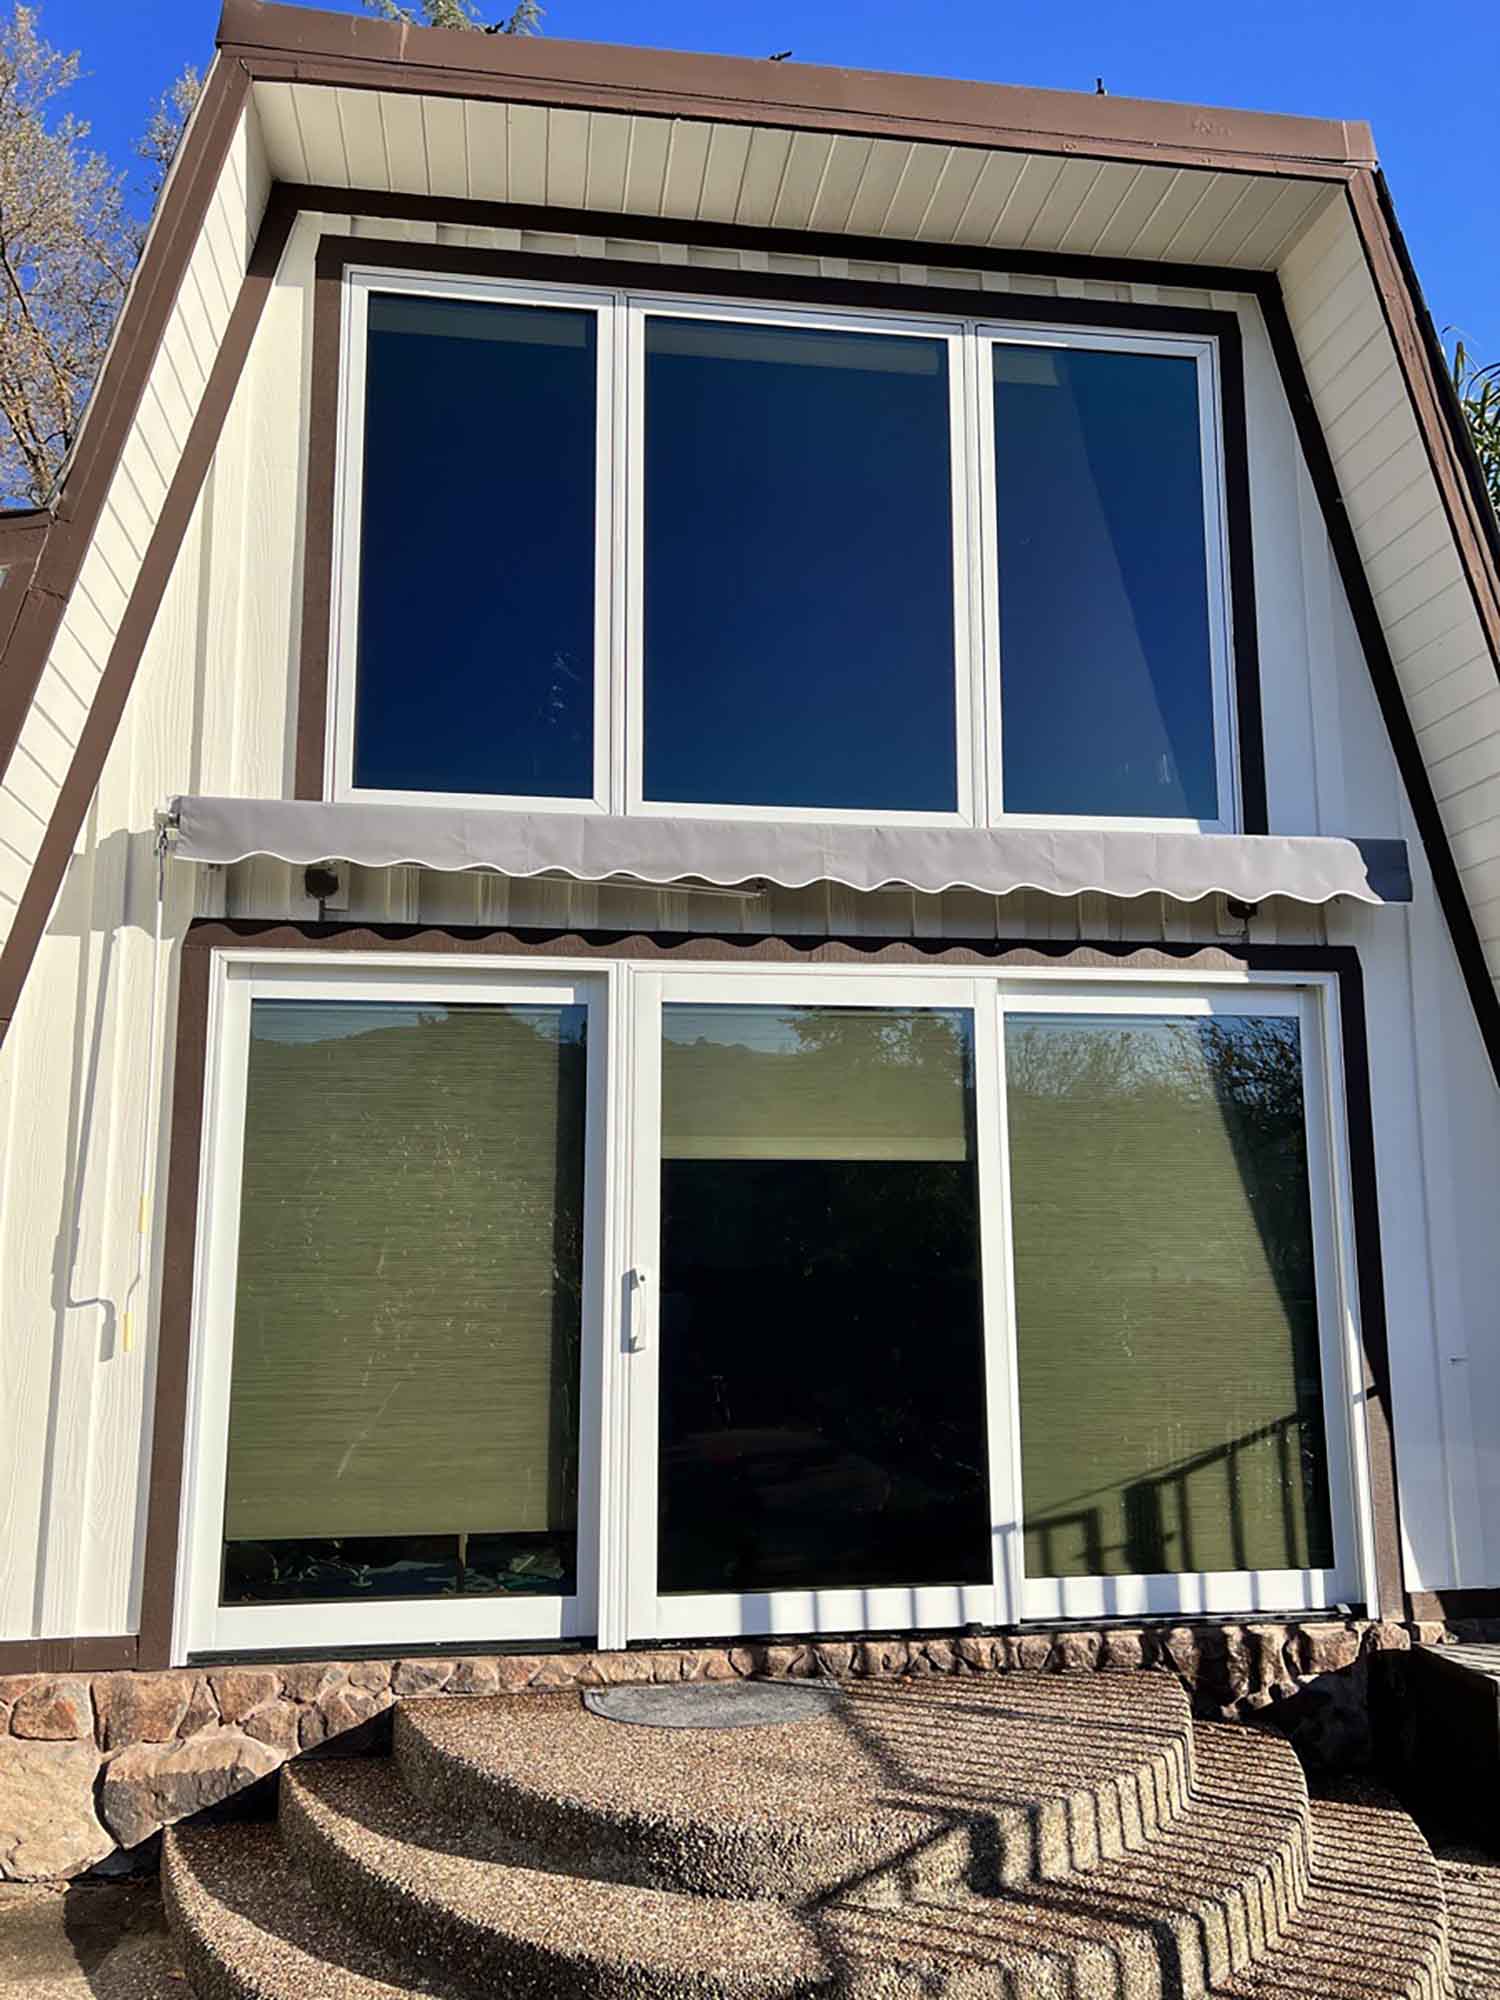 ClimatePro Installs 3M Exterior Window Film in Danville, CA